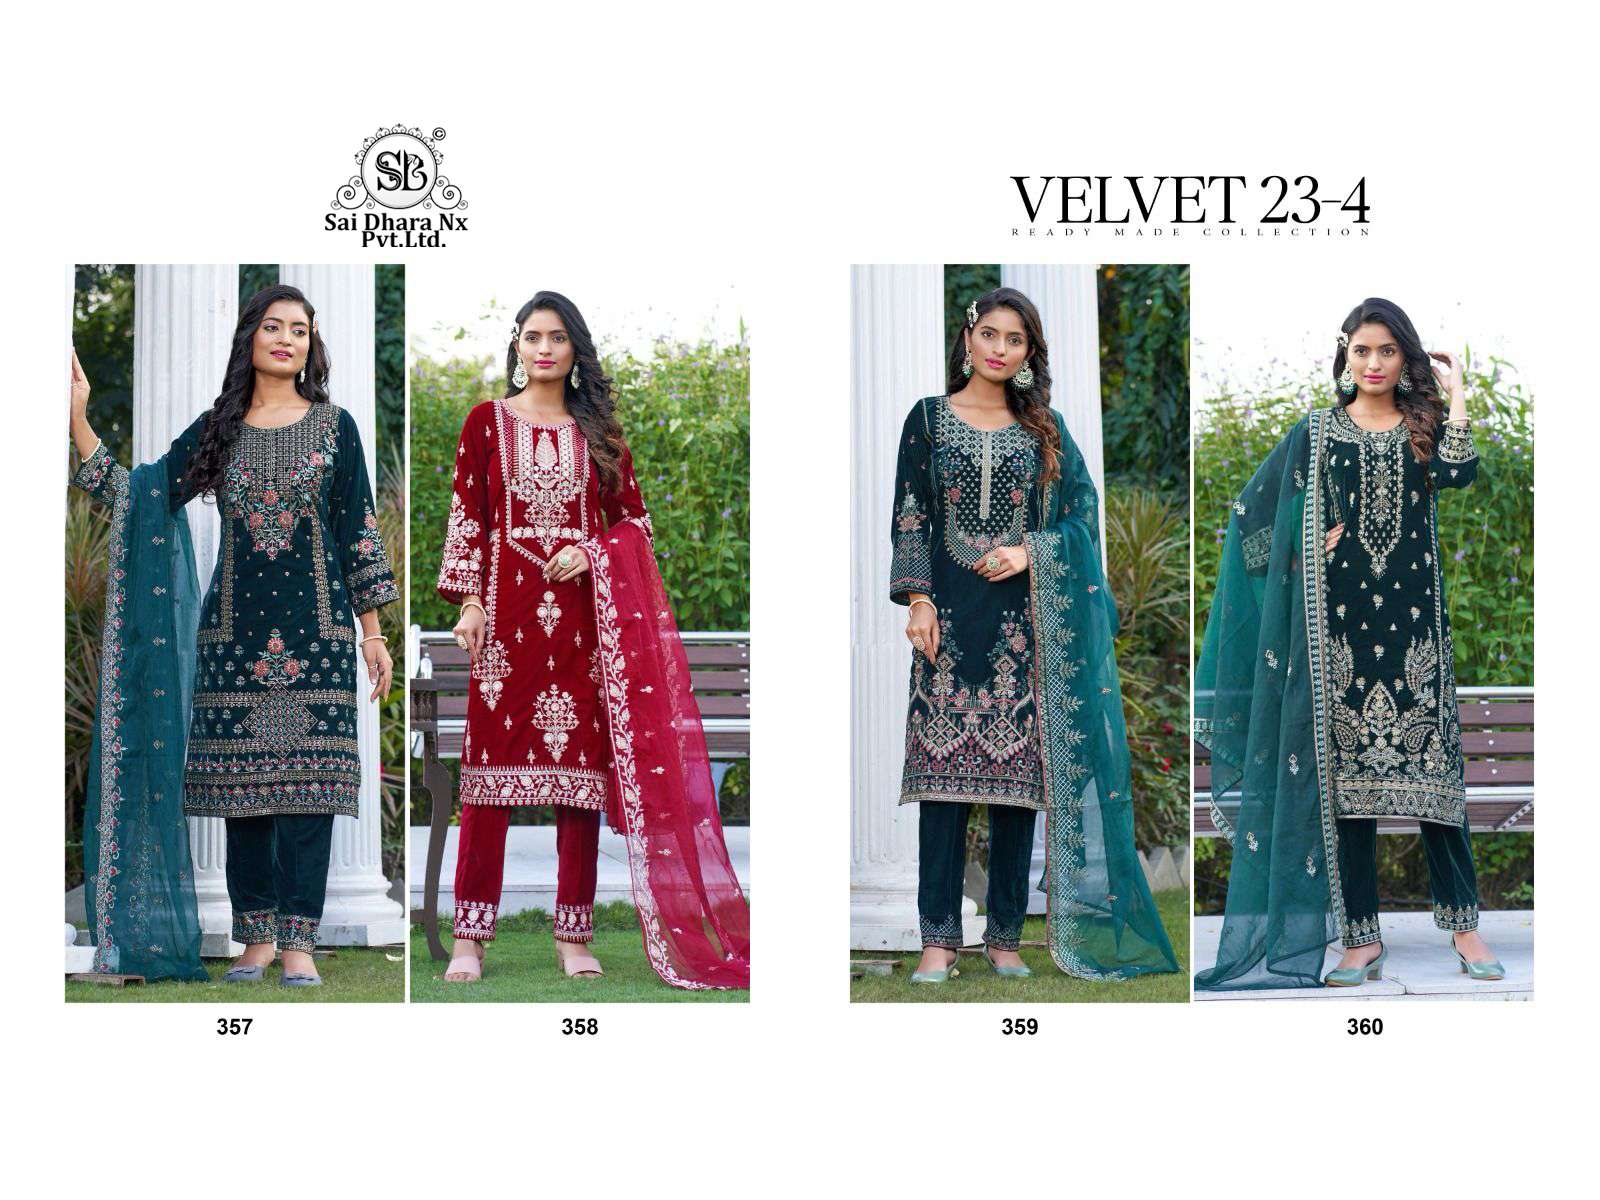 deepsy suit presents orgenza fabric velvet 23-4 latest suit wholesale shop in surat - SaiDharaNx